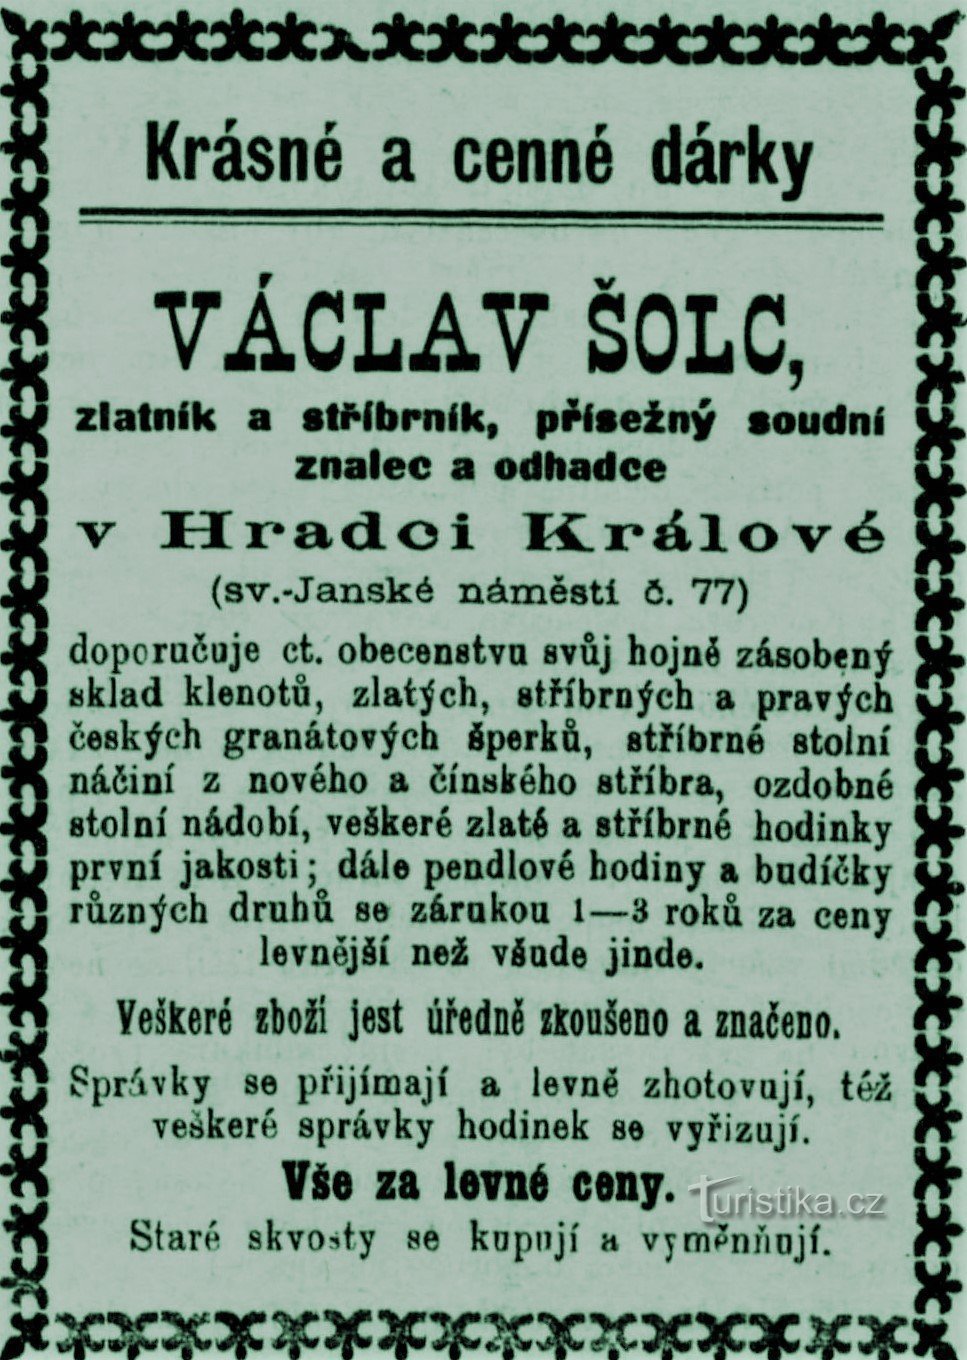 Anuncio contemporáneo del orfebre Václav Šolec de Hradec Králové de 1899